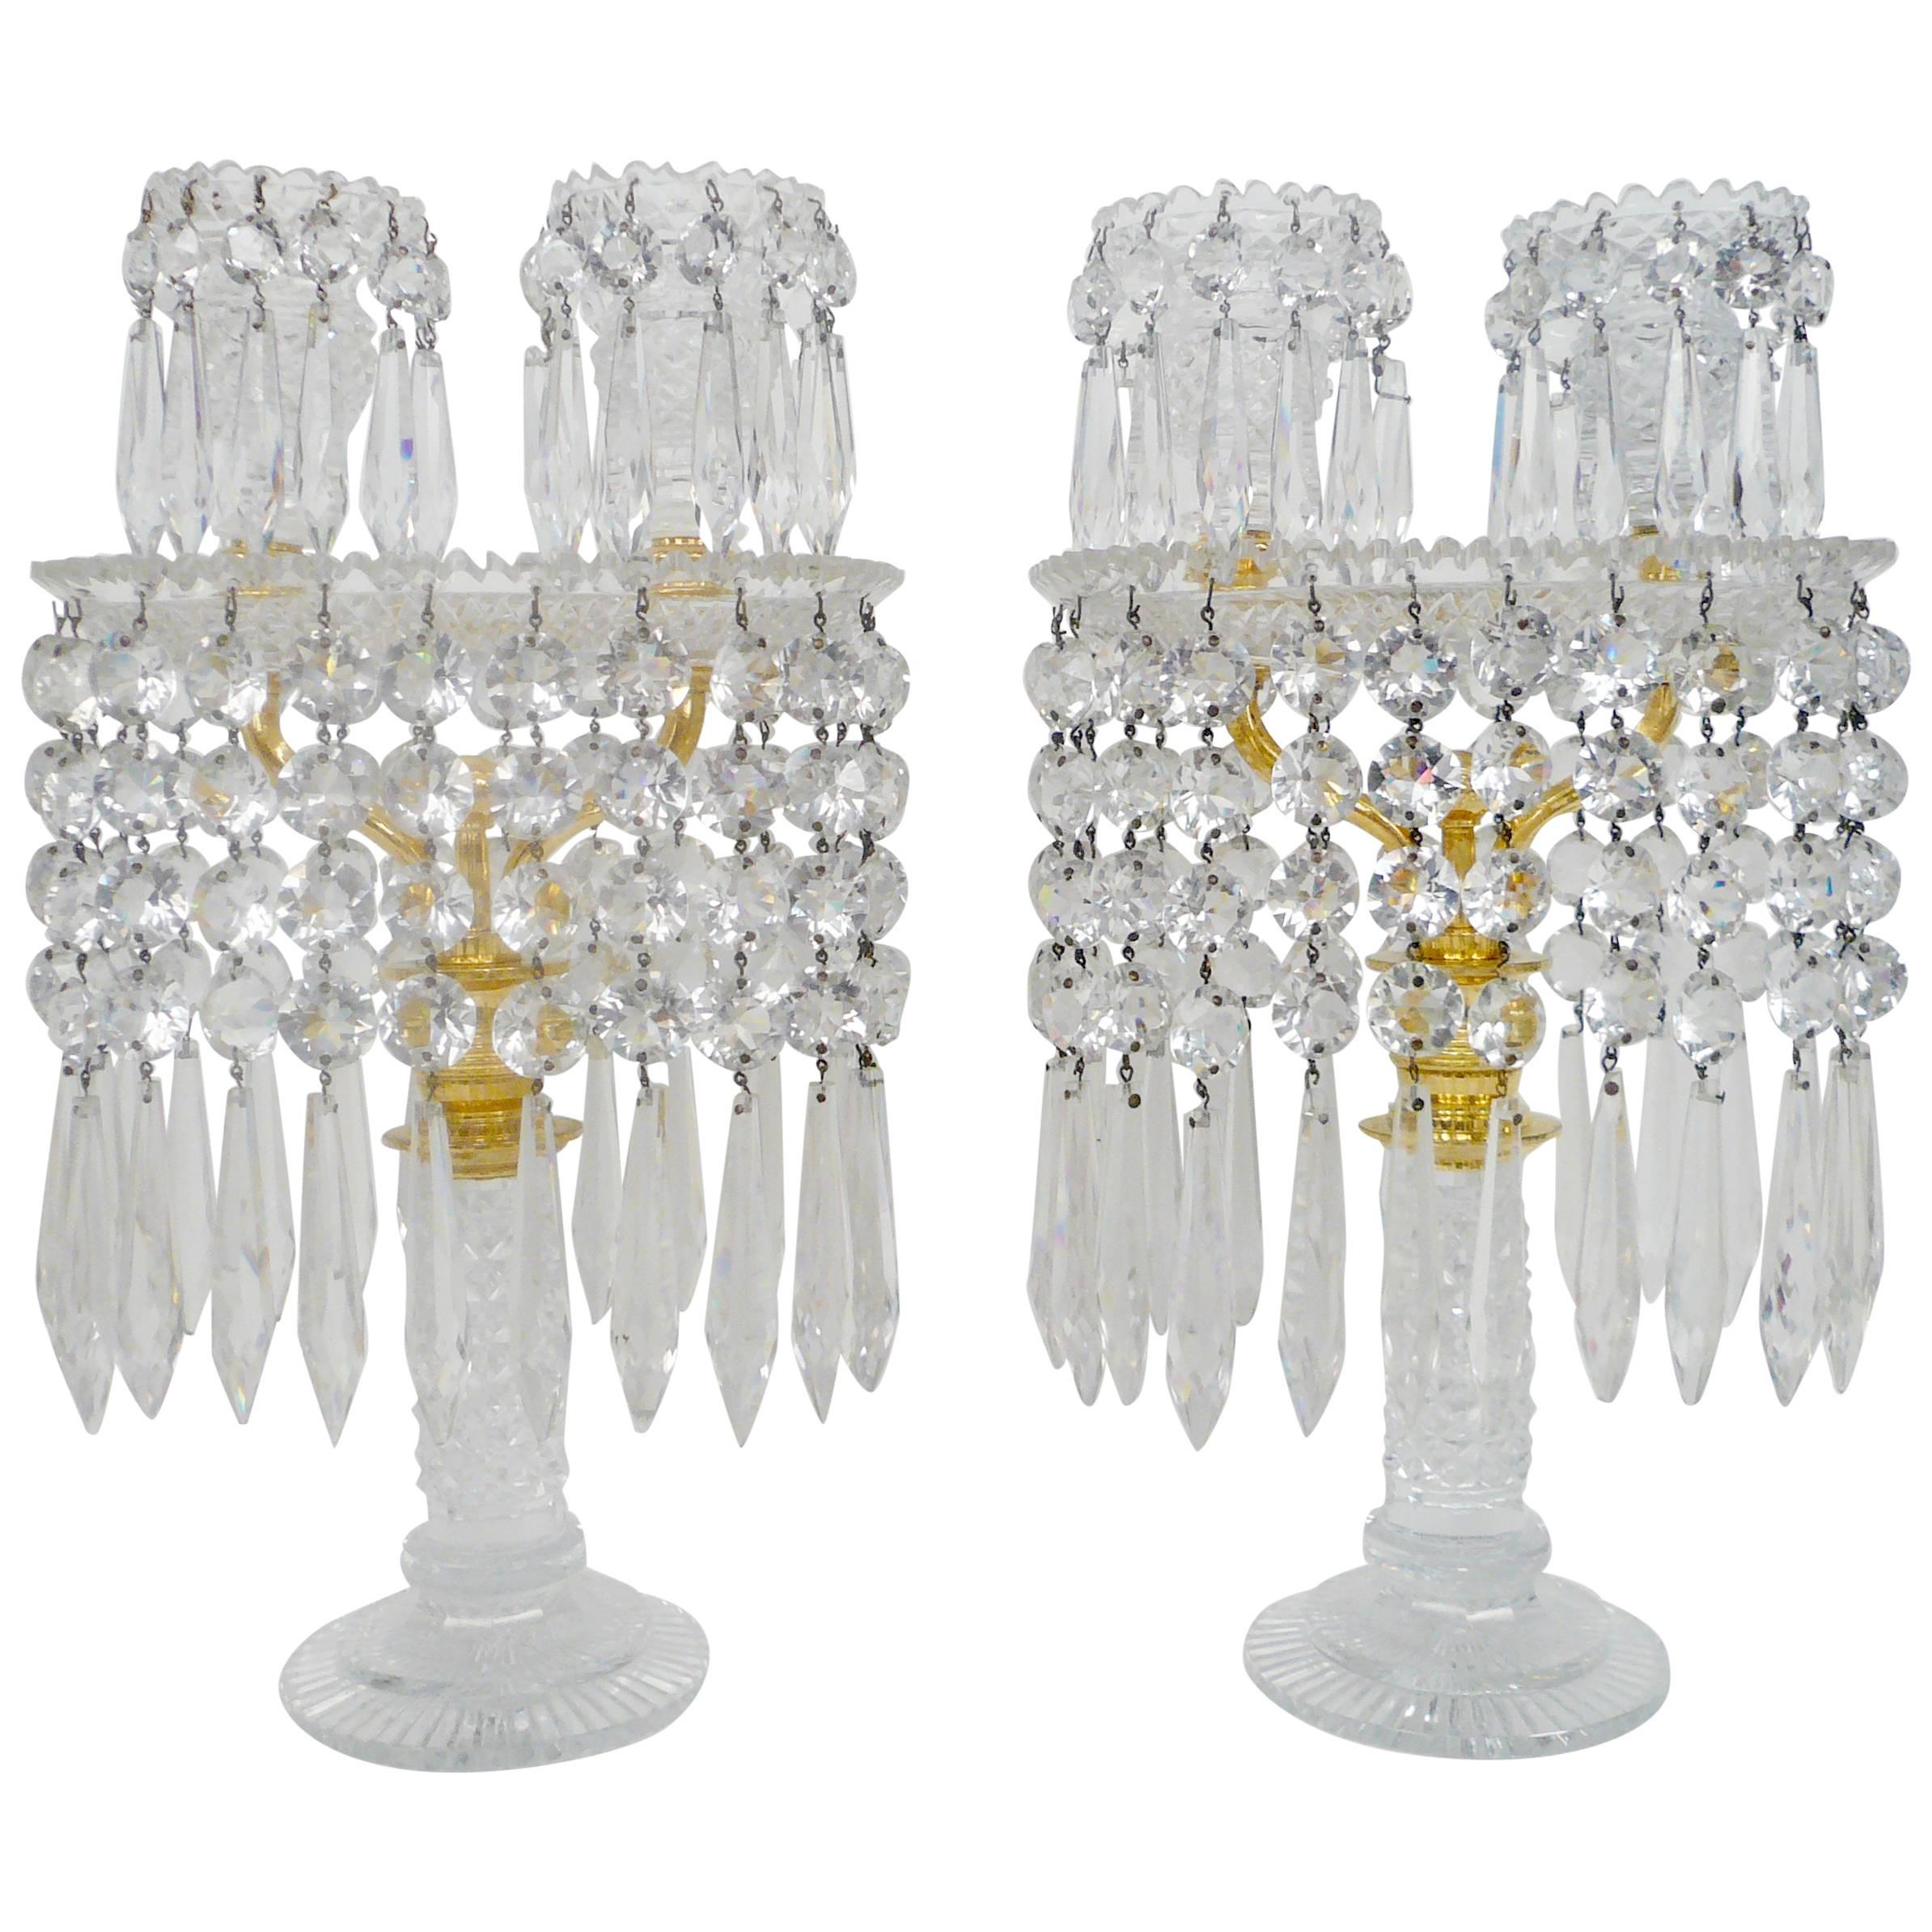 Paire de candélabres en verre taillé de style Régence anglaise, attribués à John Blades